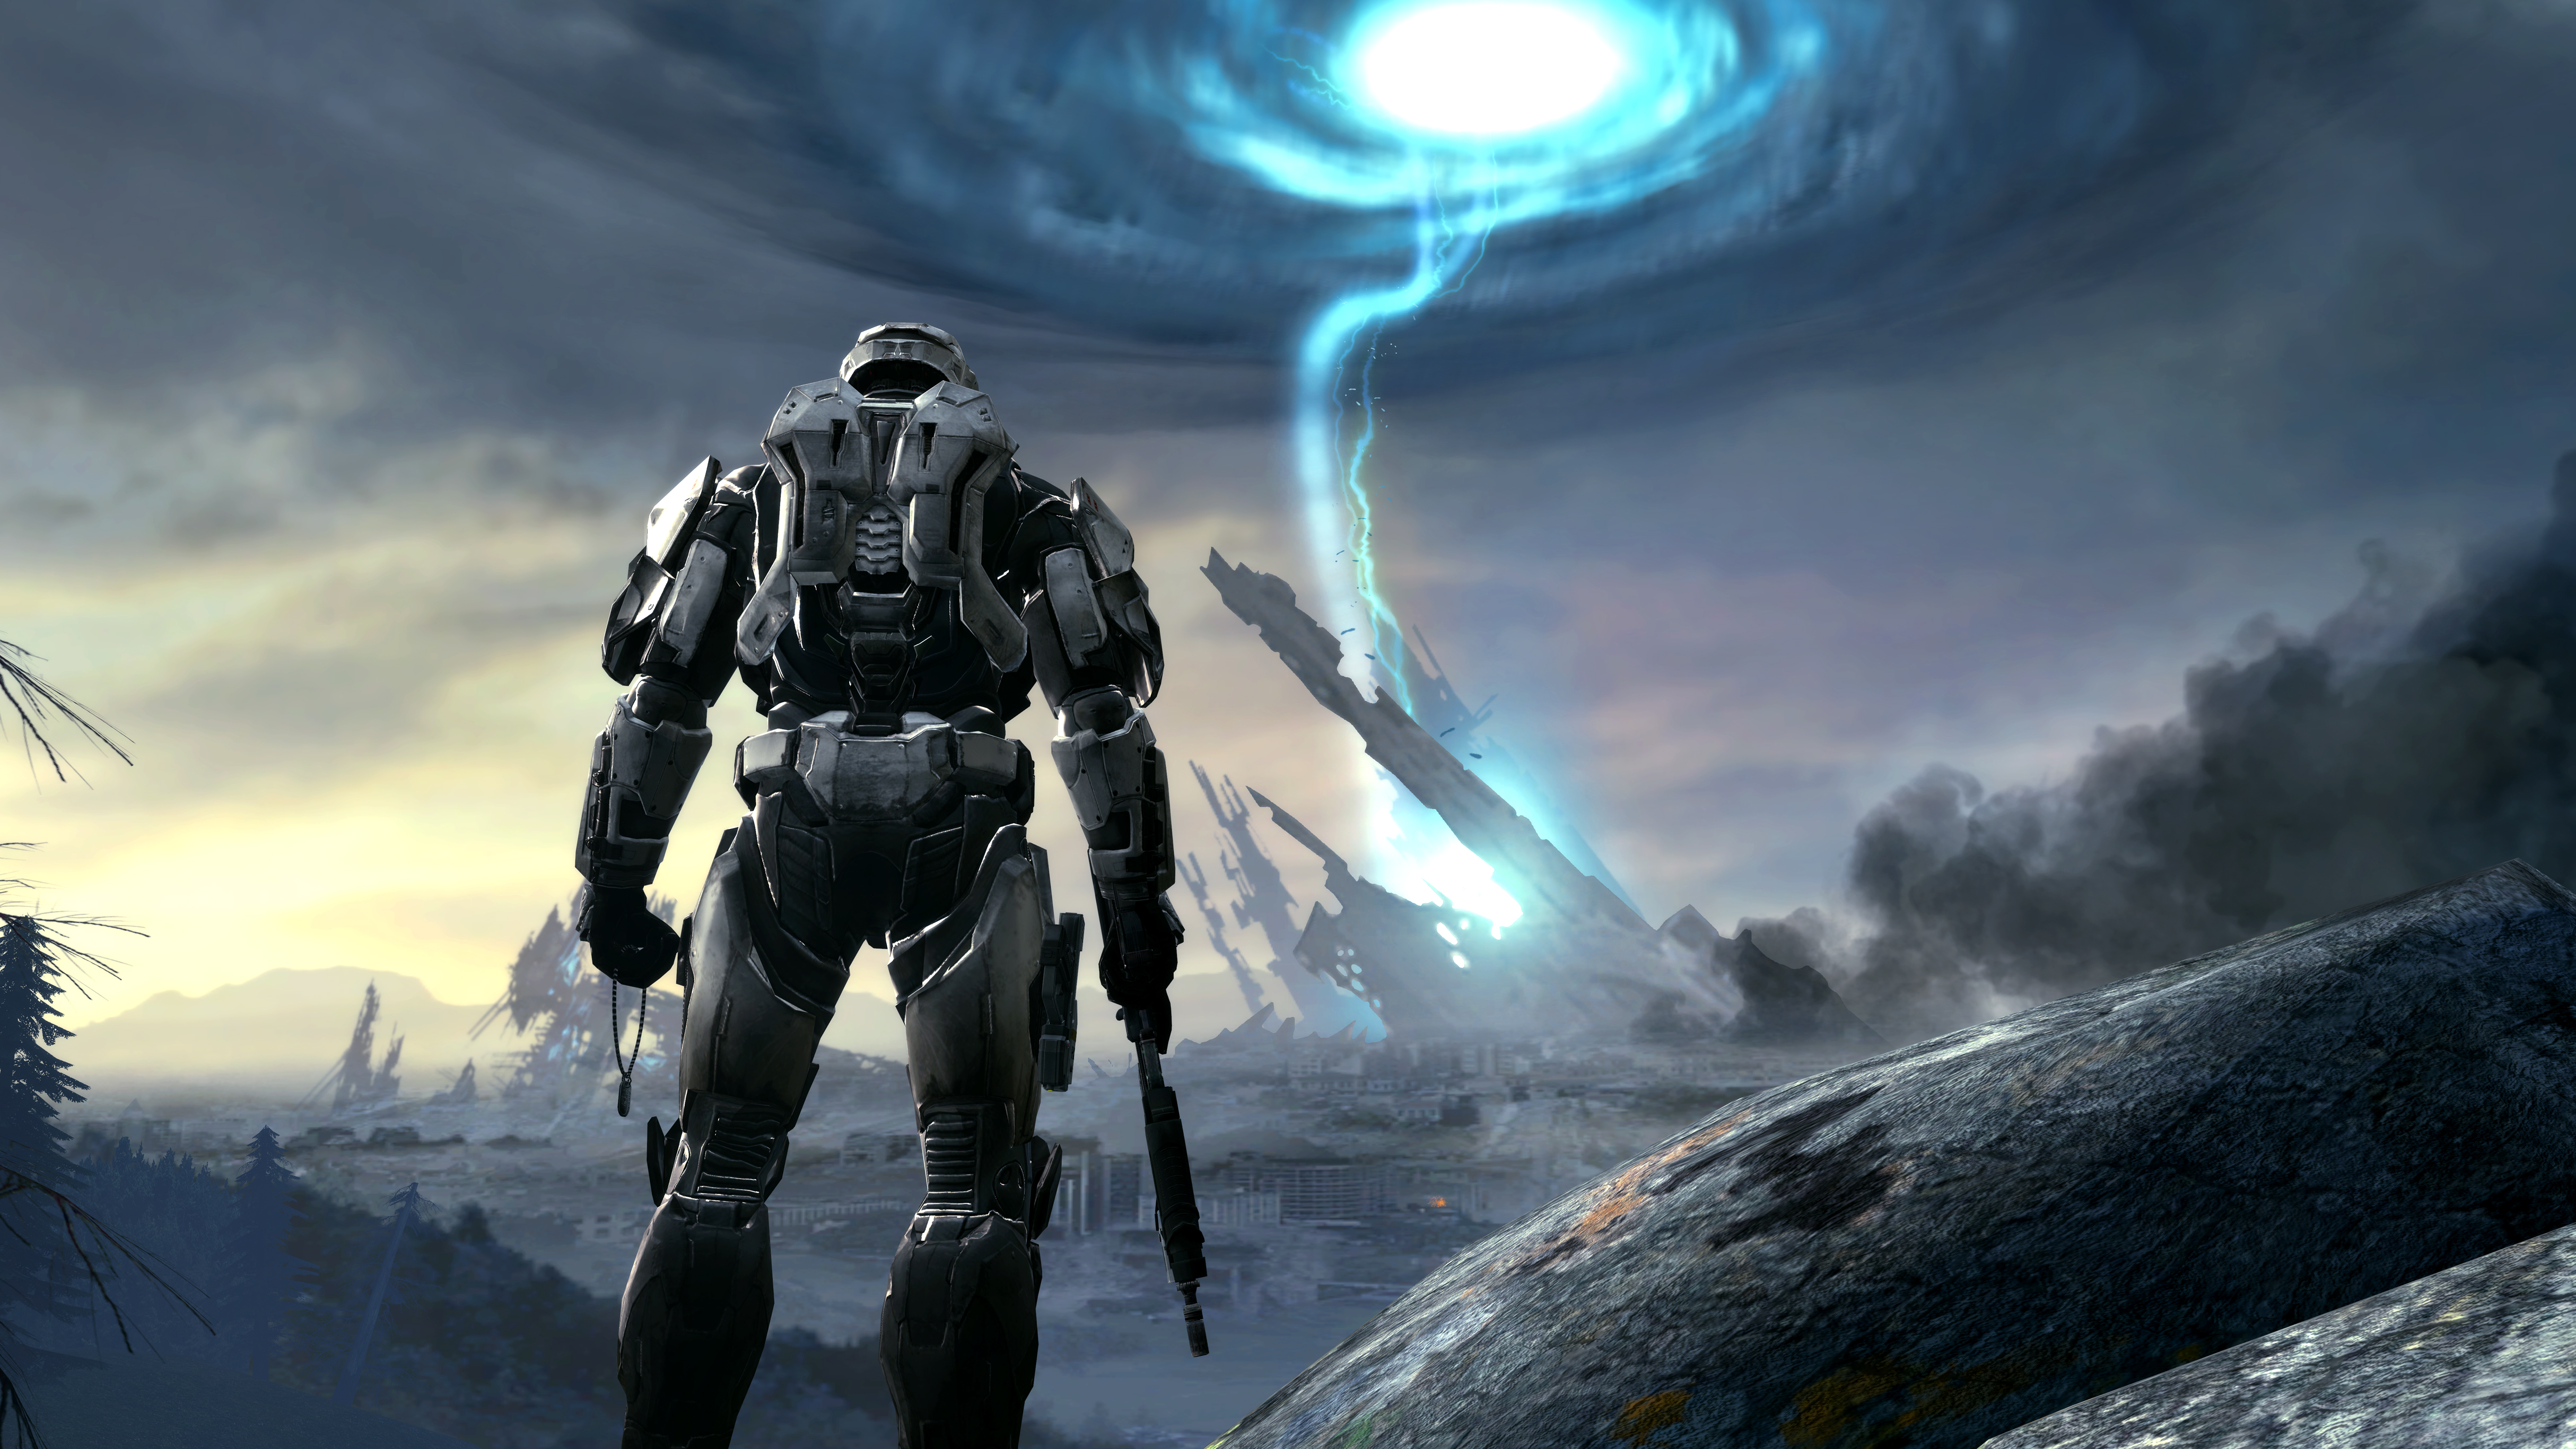 Tiến về tương lai với bộ sưu tập hình nền Halo 4K Ultra HD của Kommandant